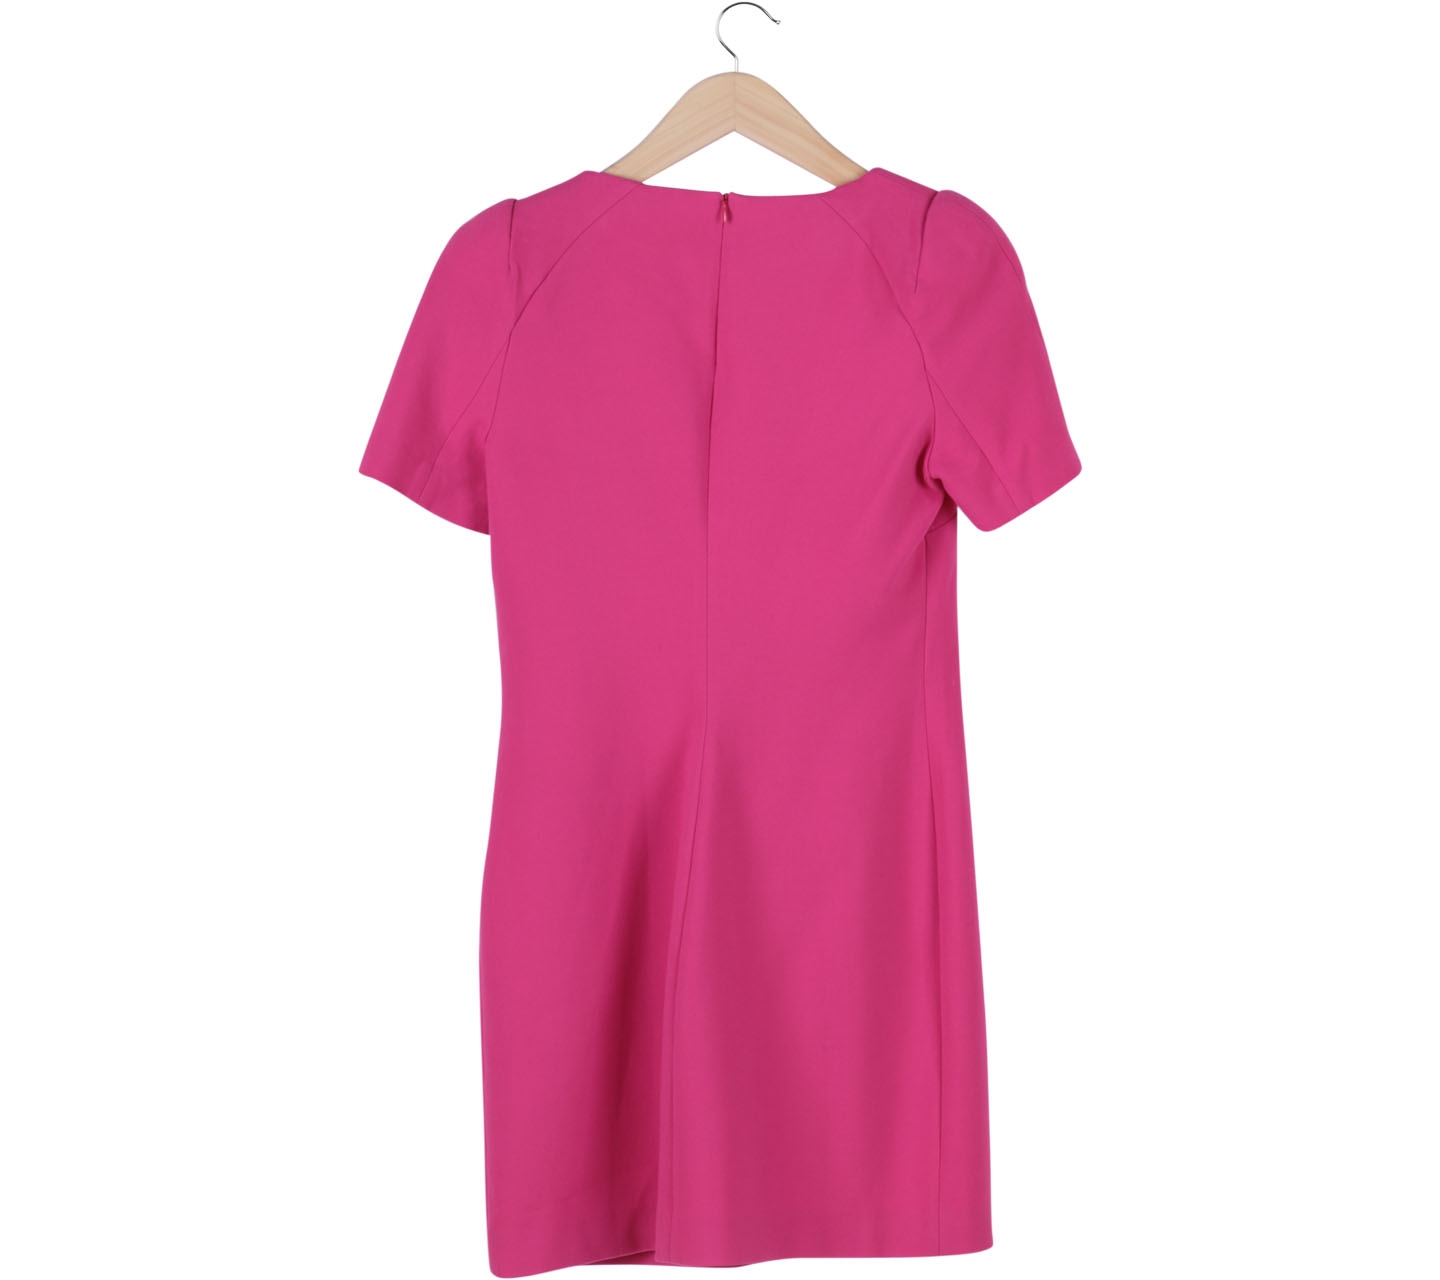 Zara Pink Shoulder Pad Mini Dress